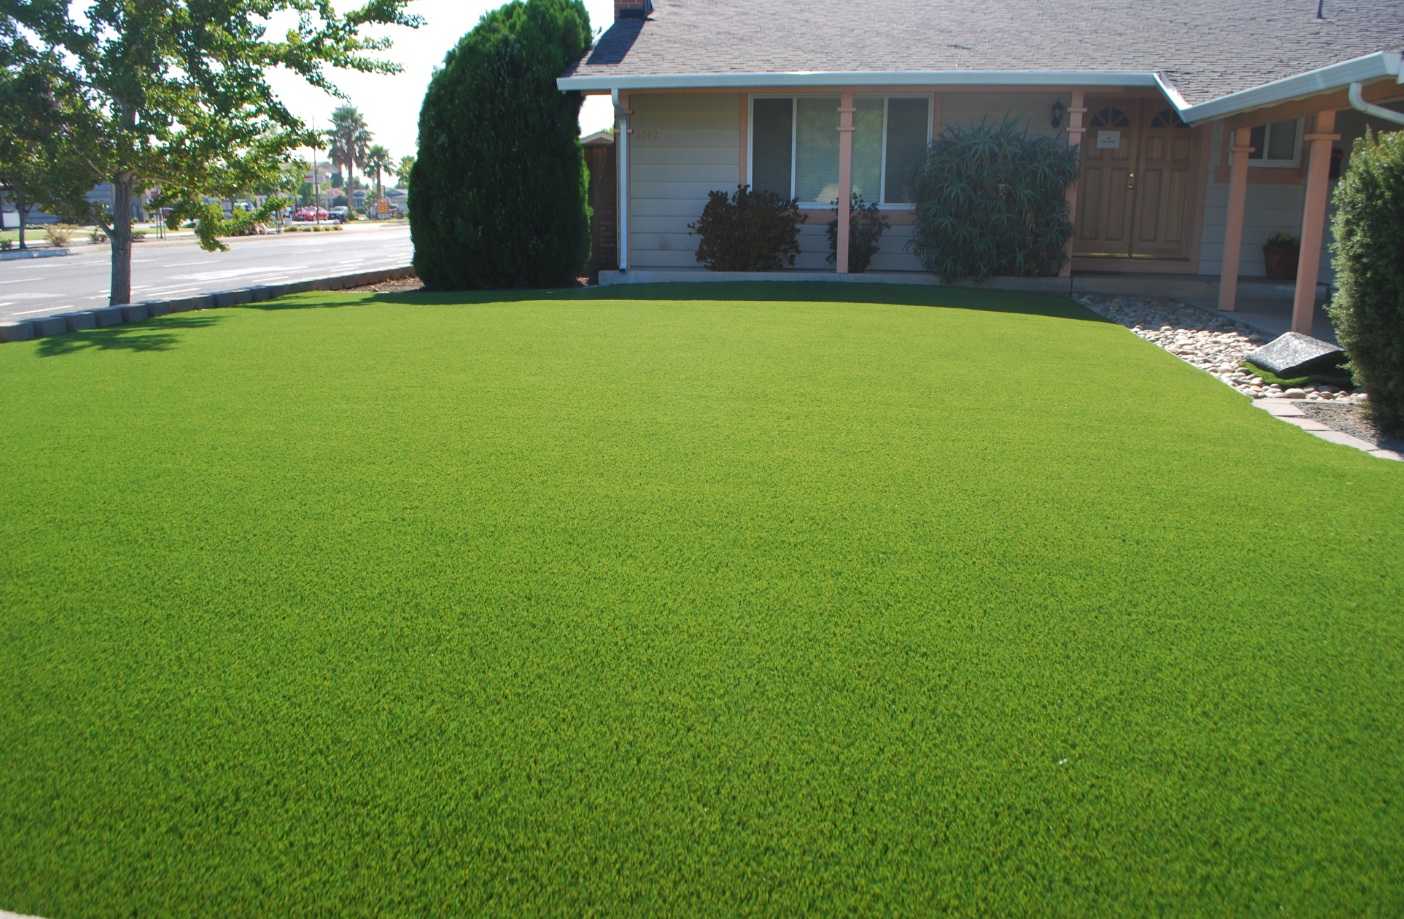 Стрижка газона поможет создать на участке ровный, густой зеленый ковер